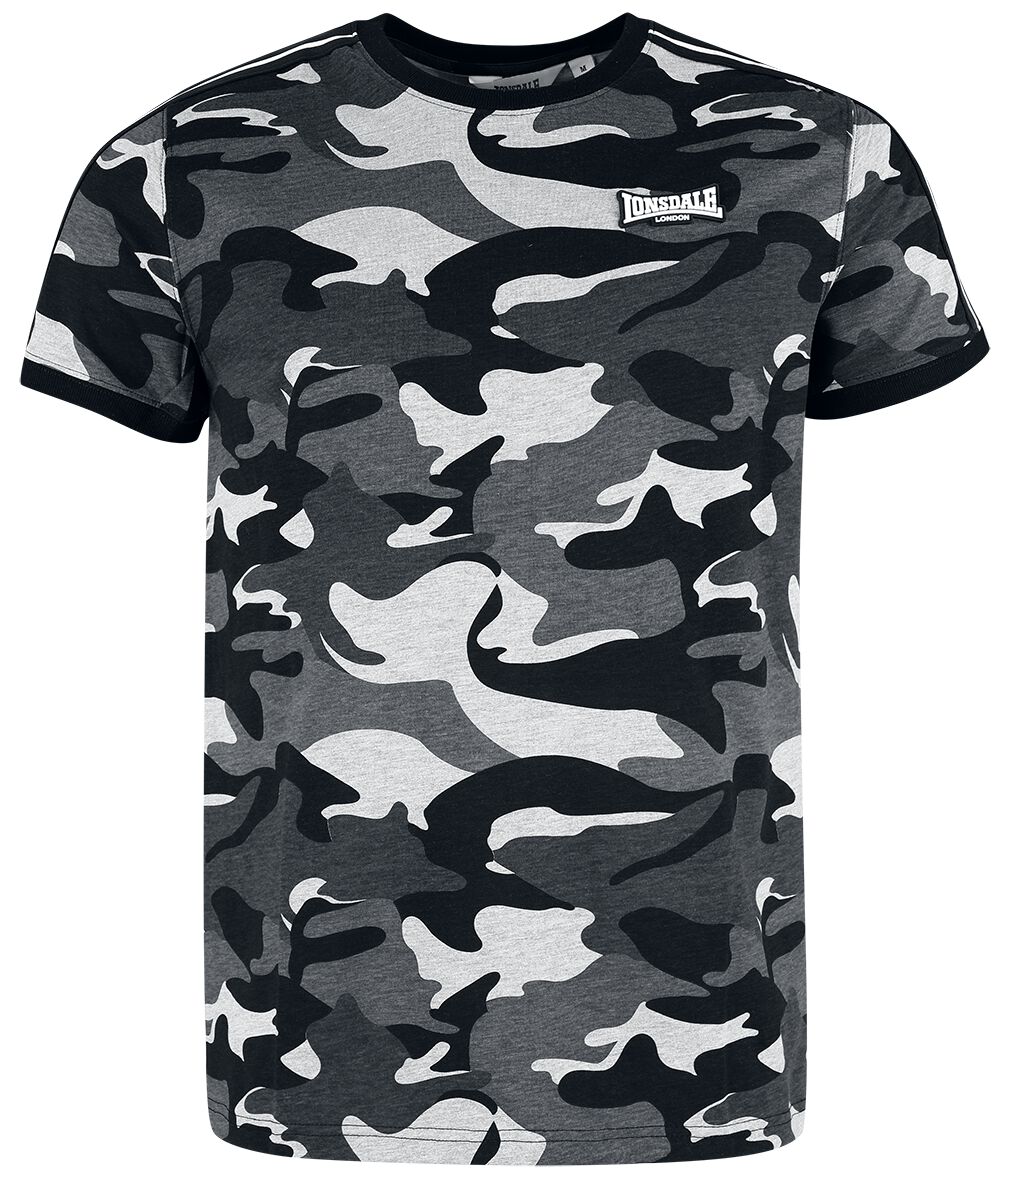 Lonsdale London - Camouflage/Flecktarn T-Shirt - GUNNISTA - S bis XXL - für Männer - Größe L - graucamo